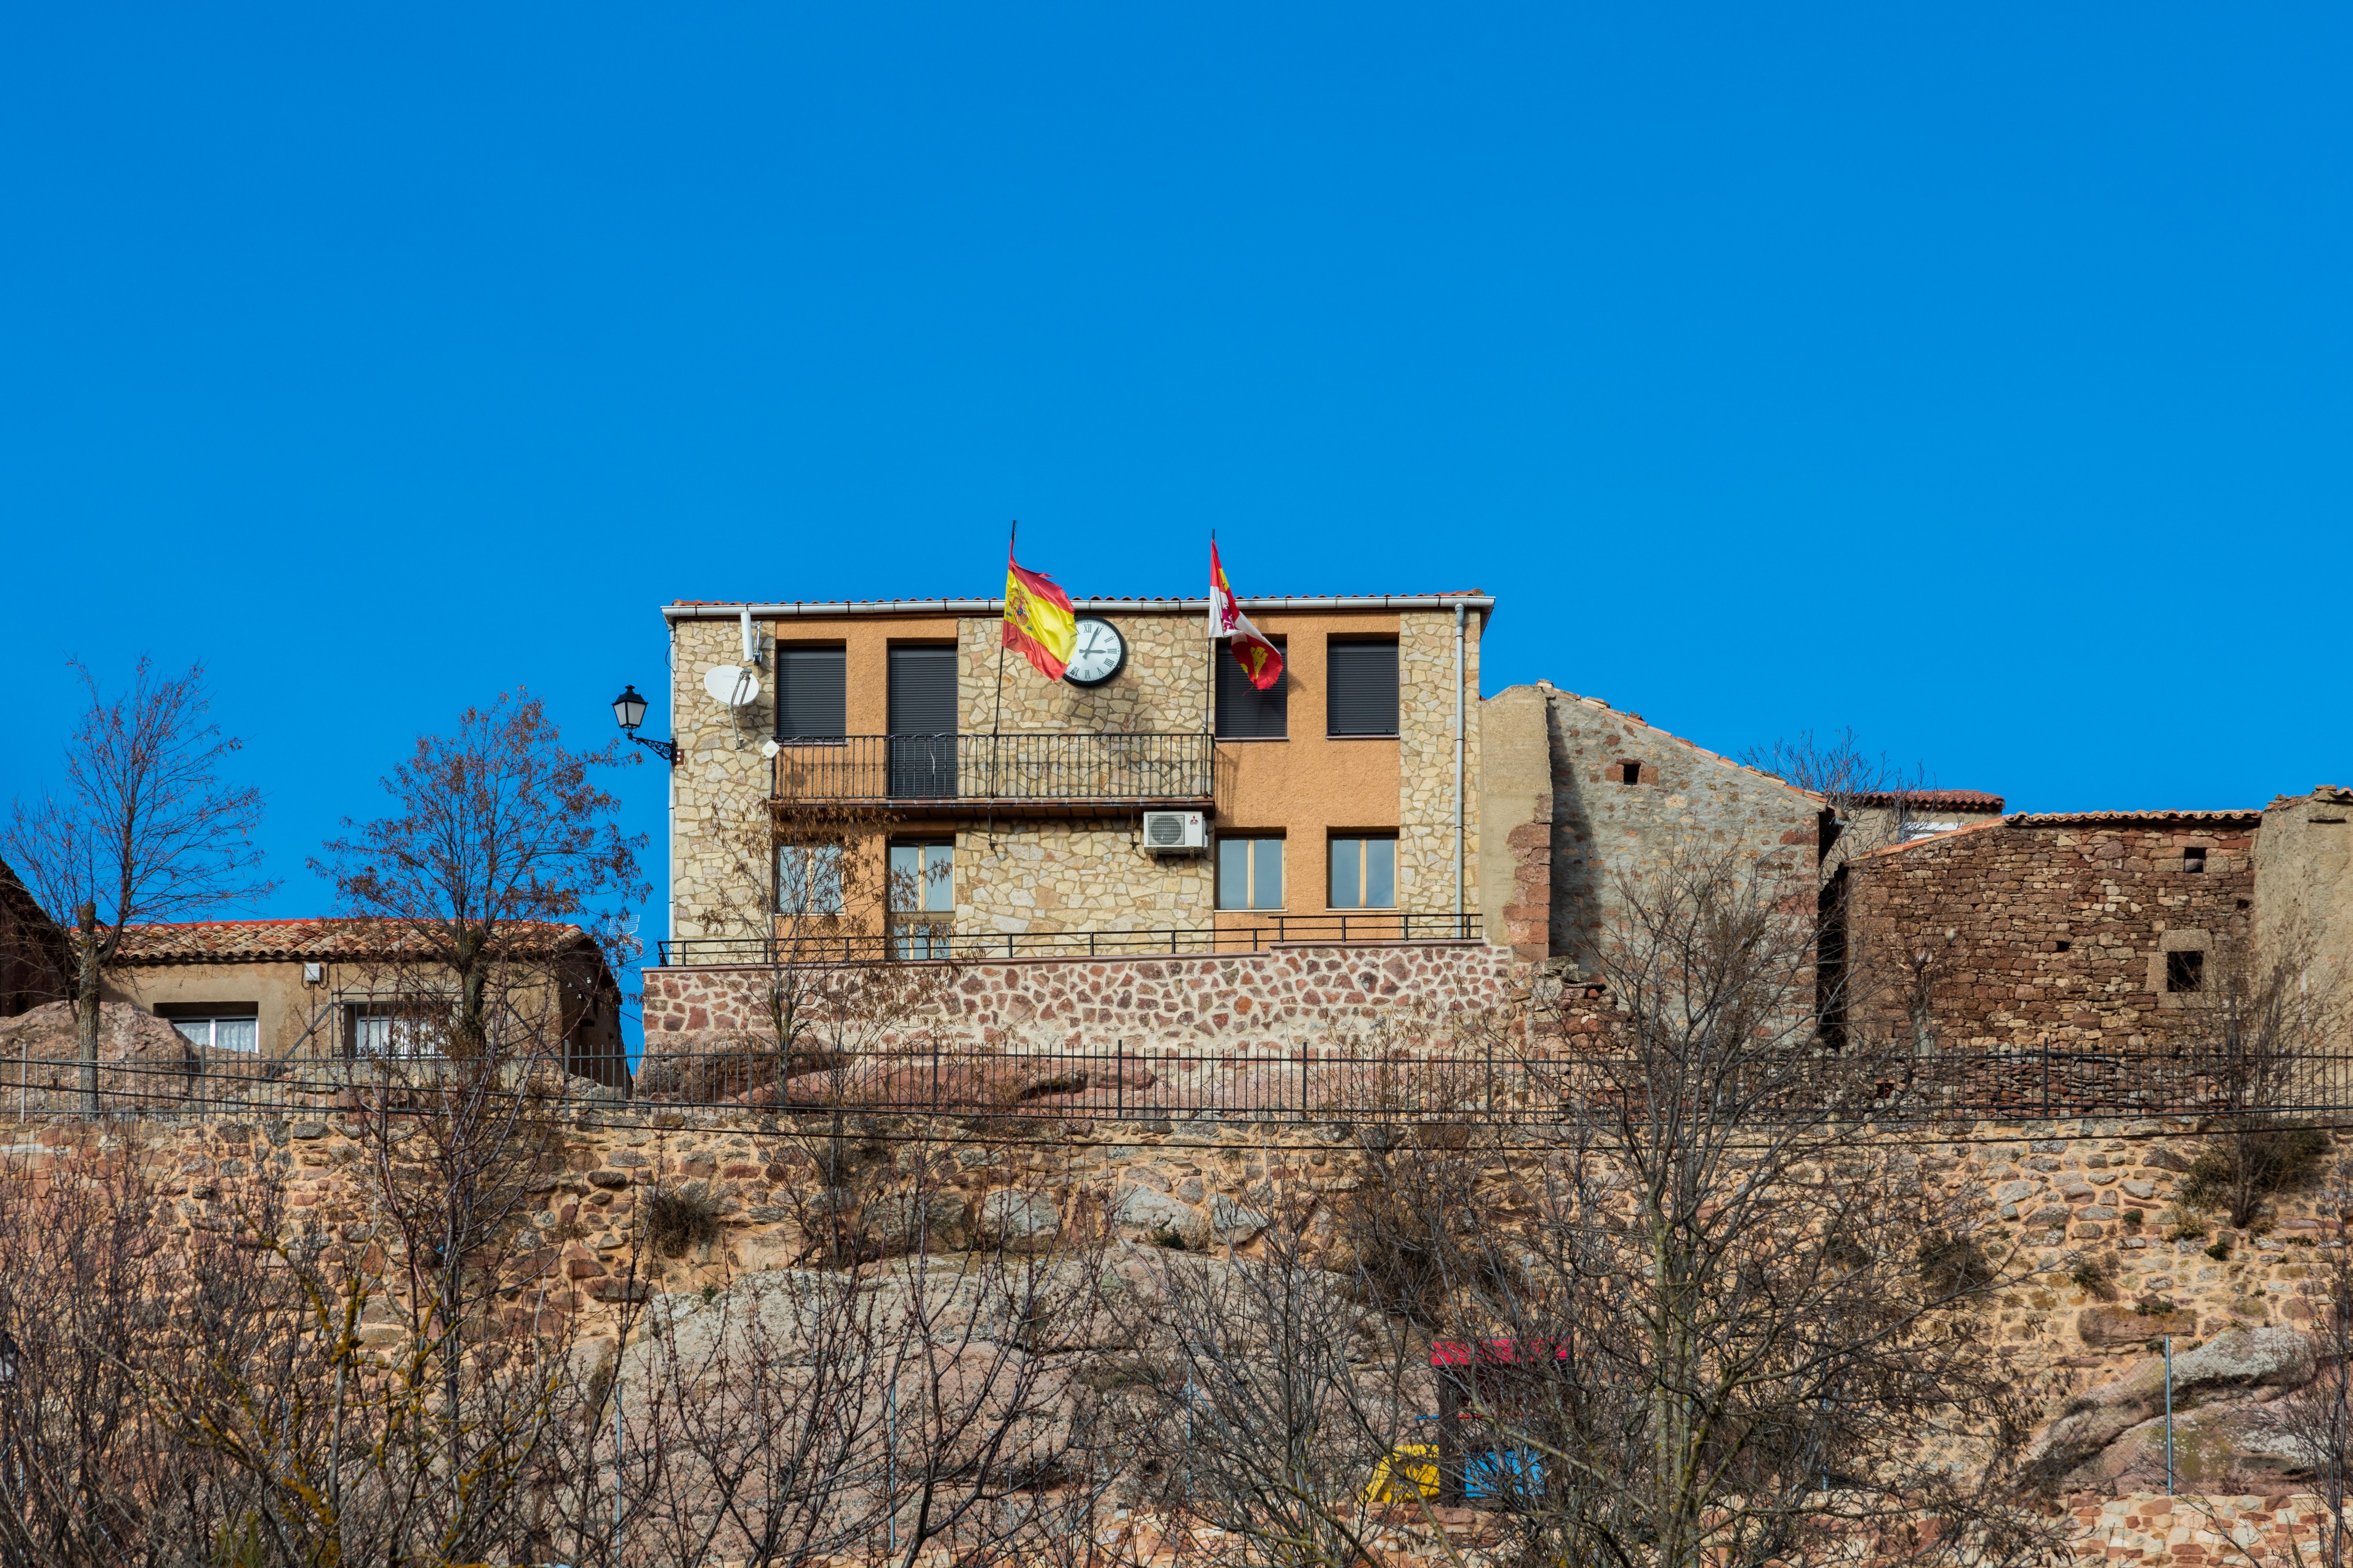 Ayuntamiento, Alcubilla de las Peñas, Soria, España, 2015-12-29, DD 82